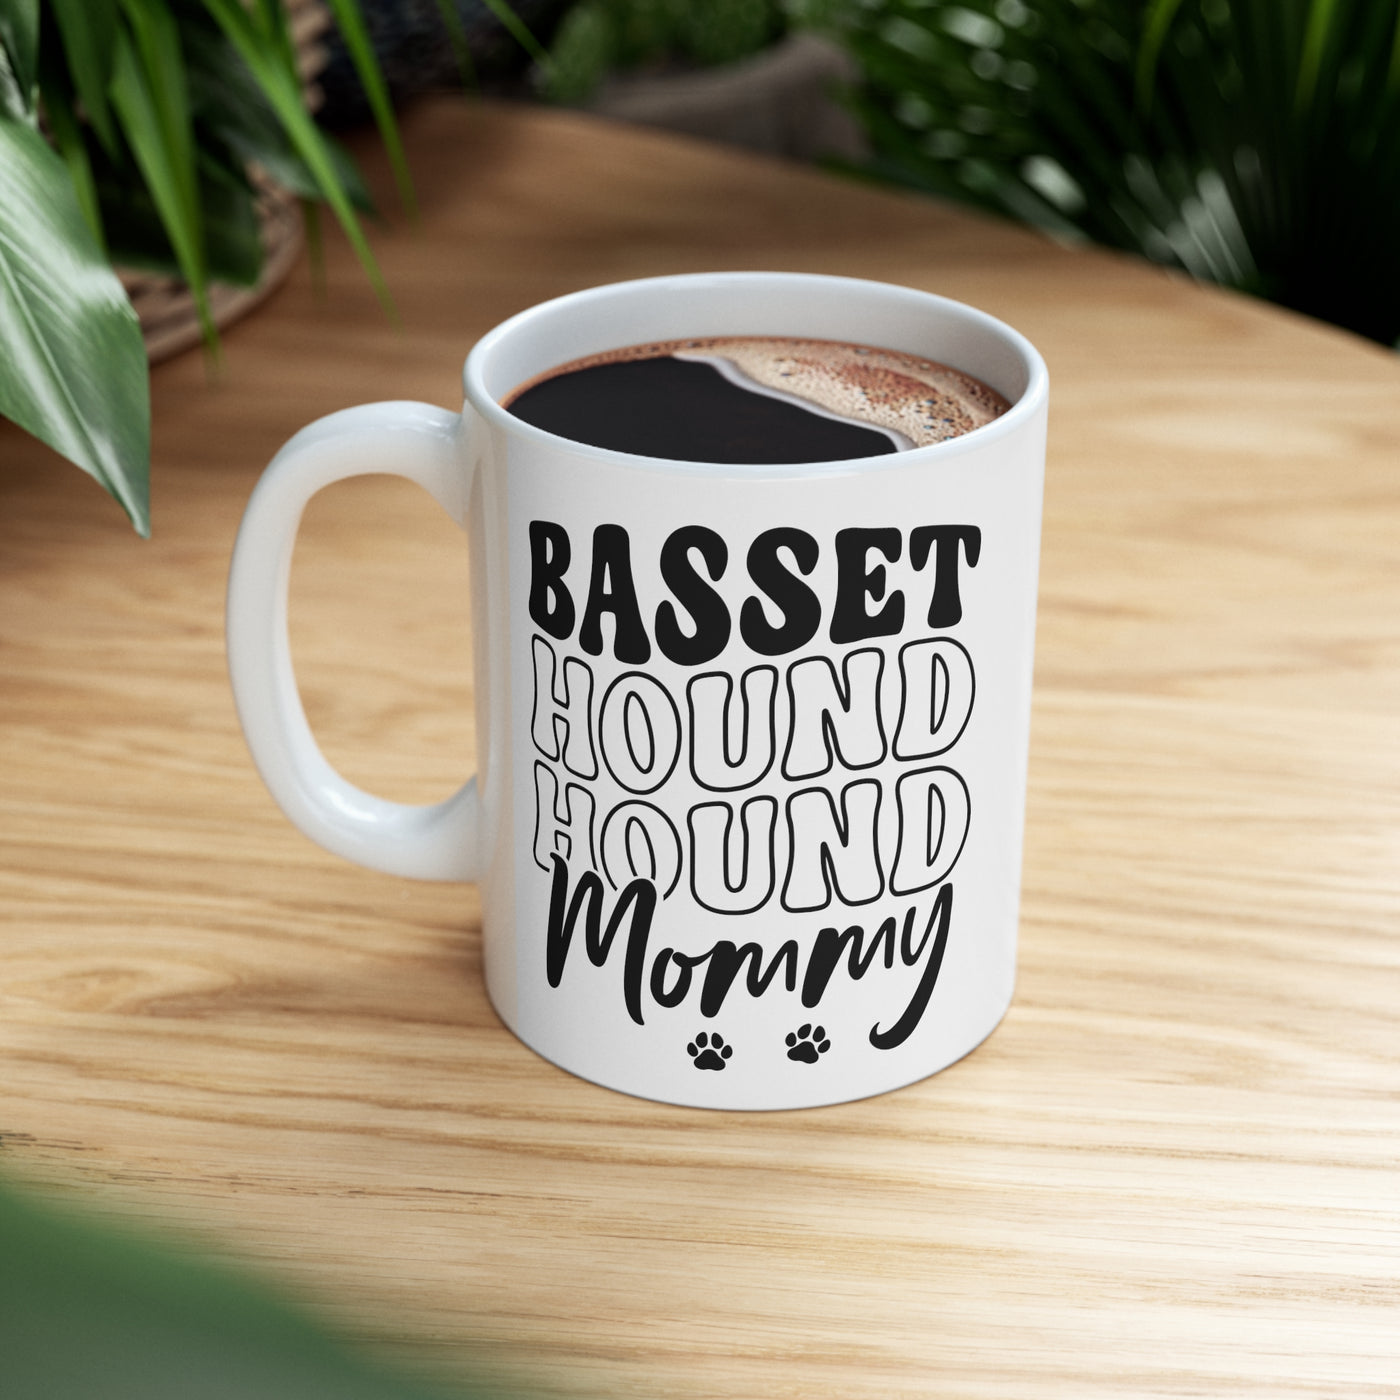 Basset Hound Mommy Ceramic Mug